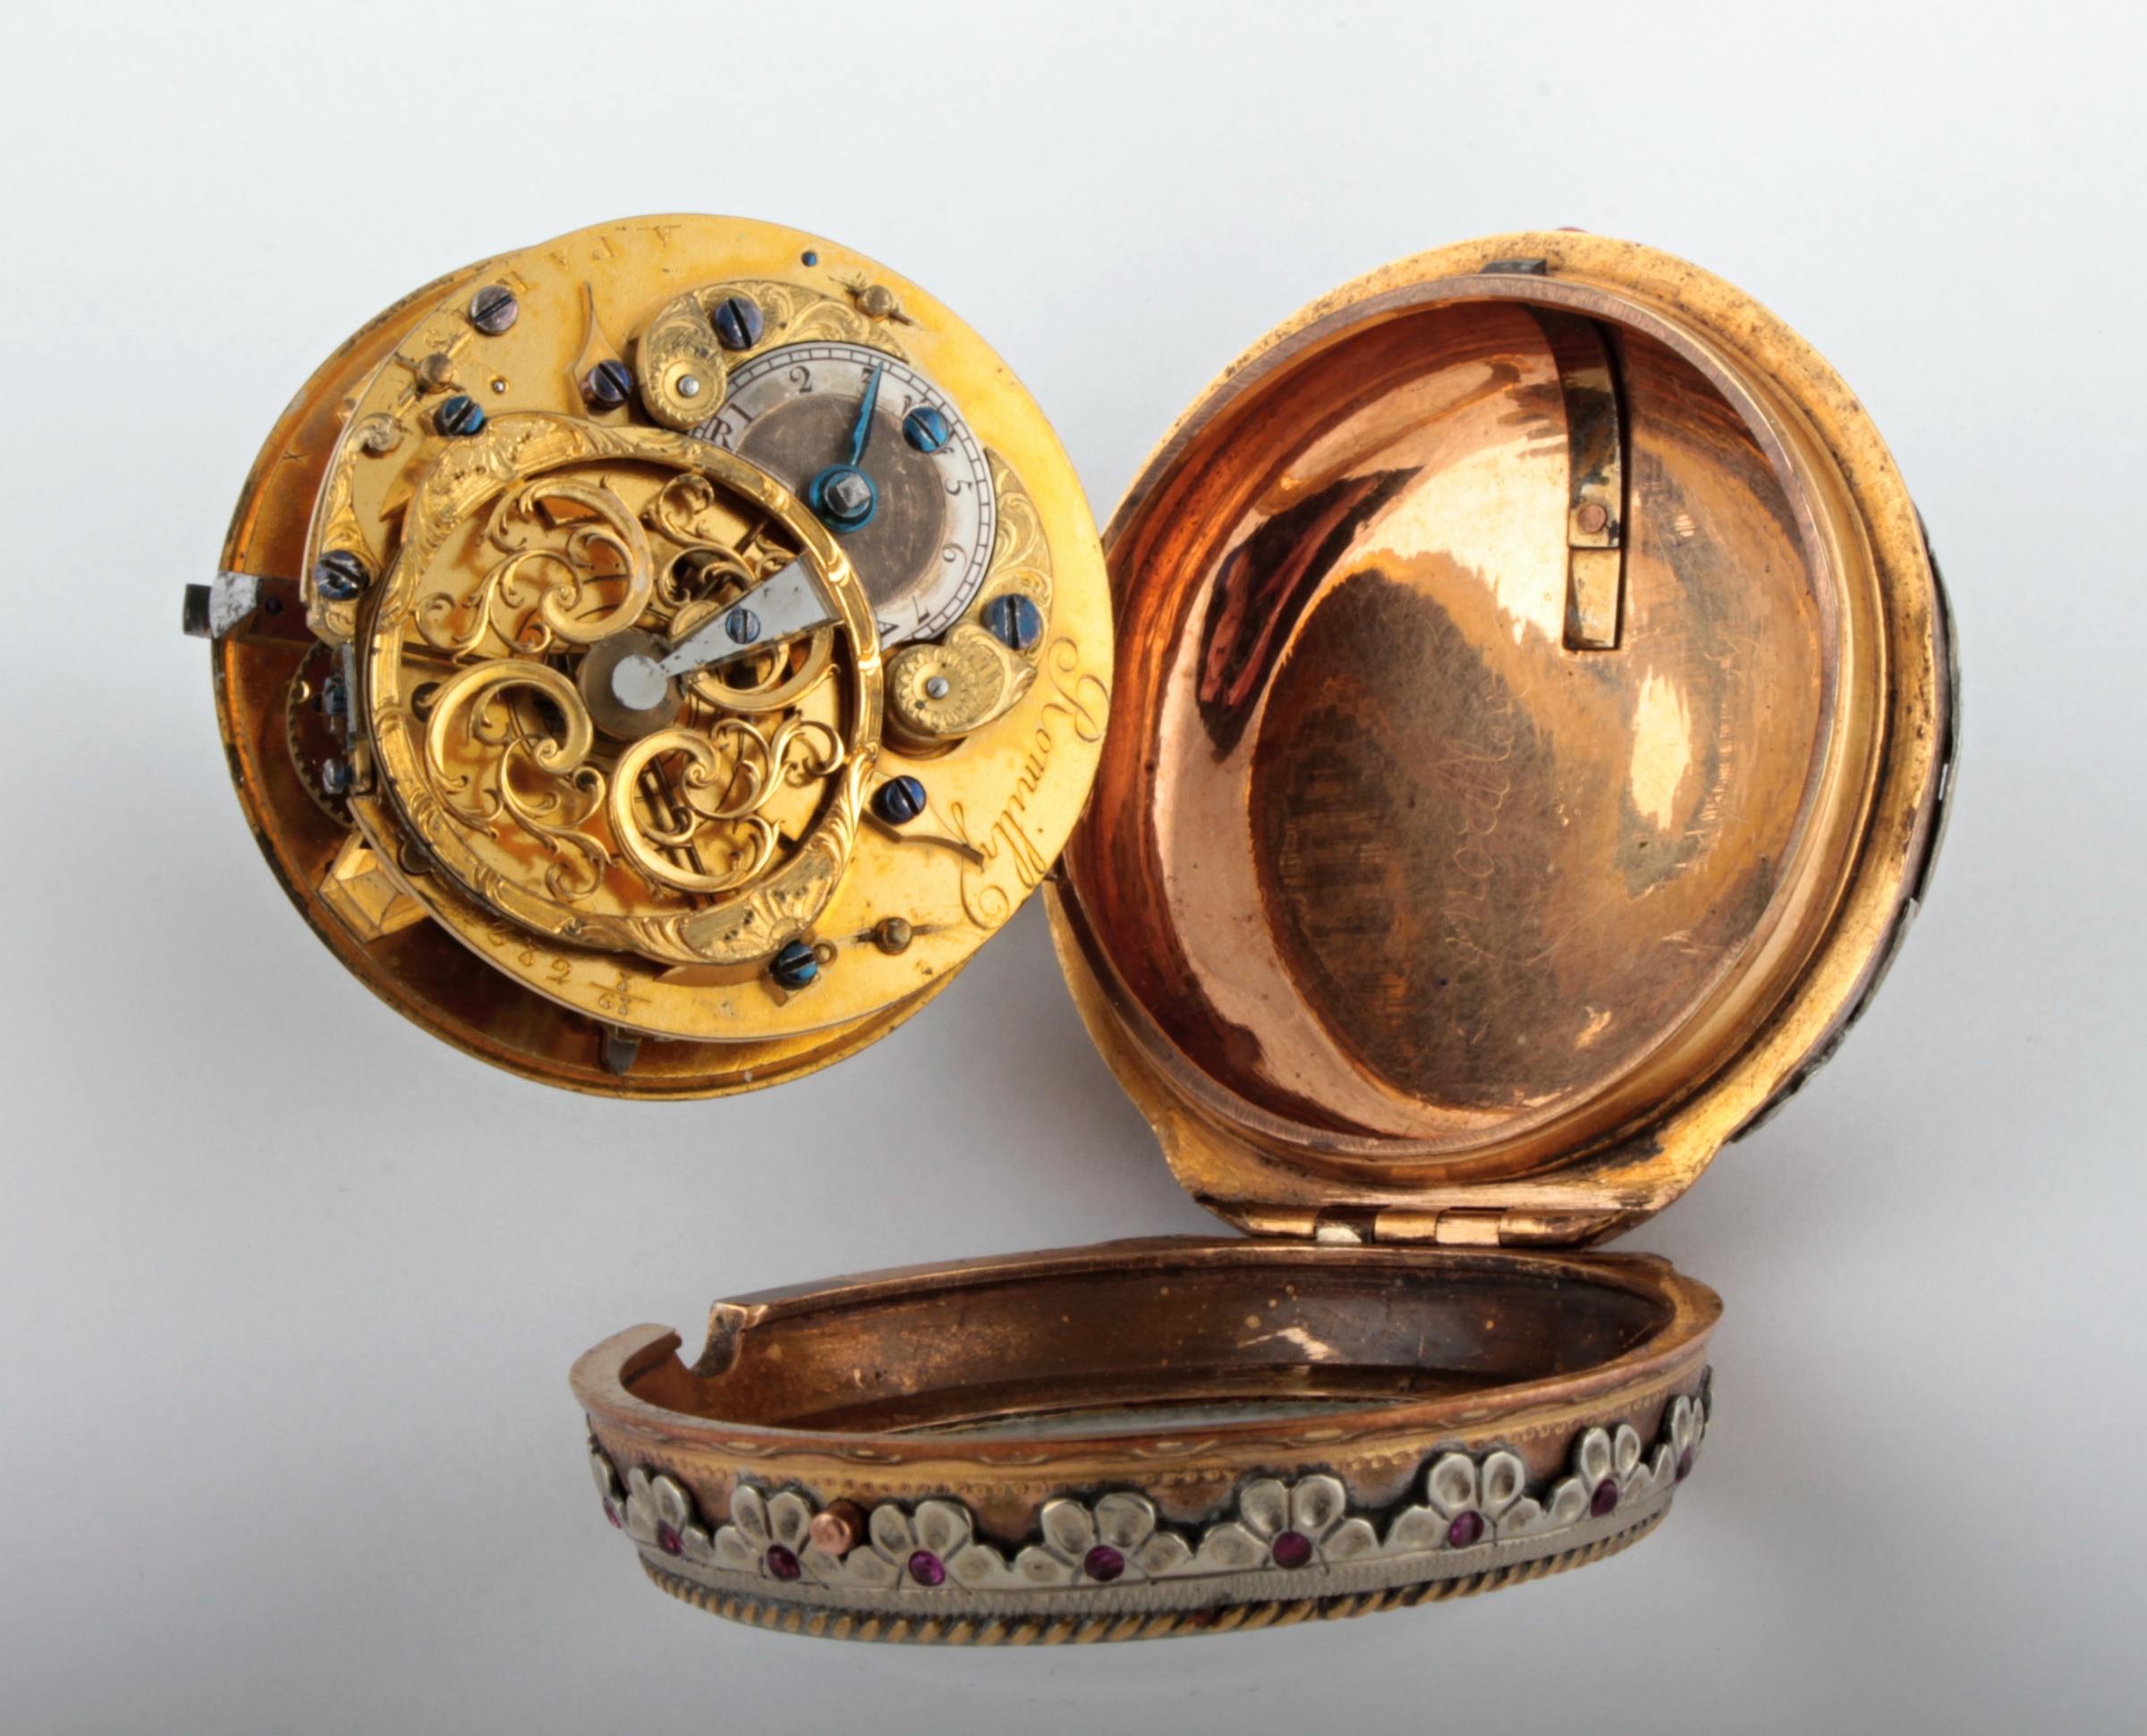 Bohatě zdobené kapesní hodinky - Romilly A Paris